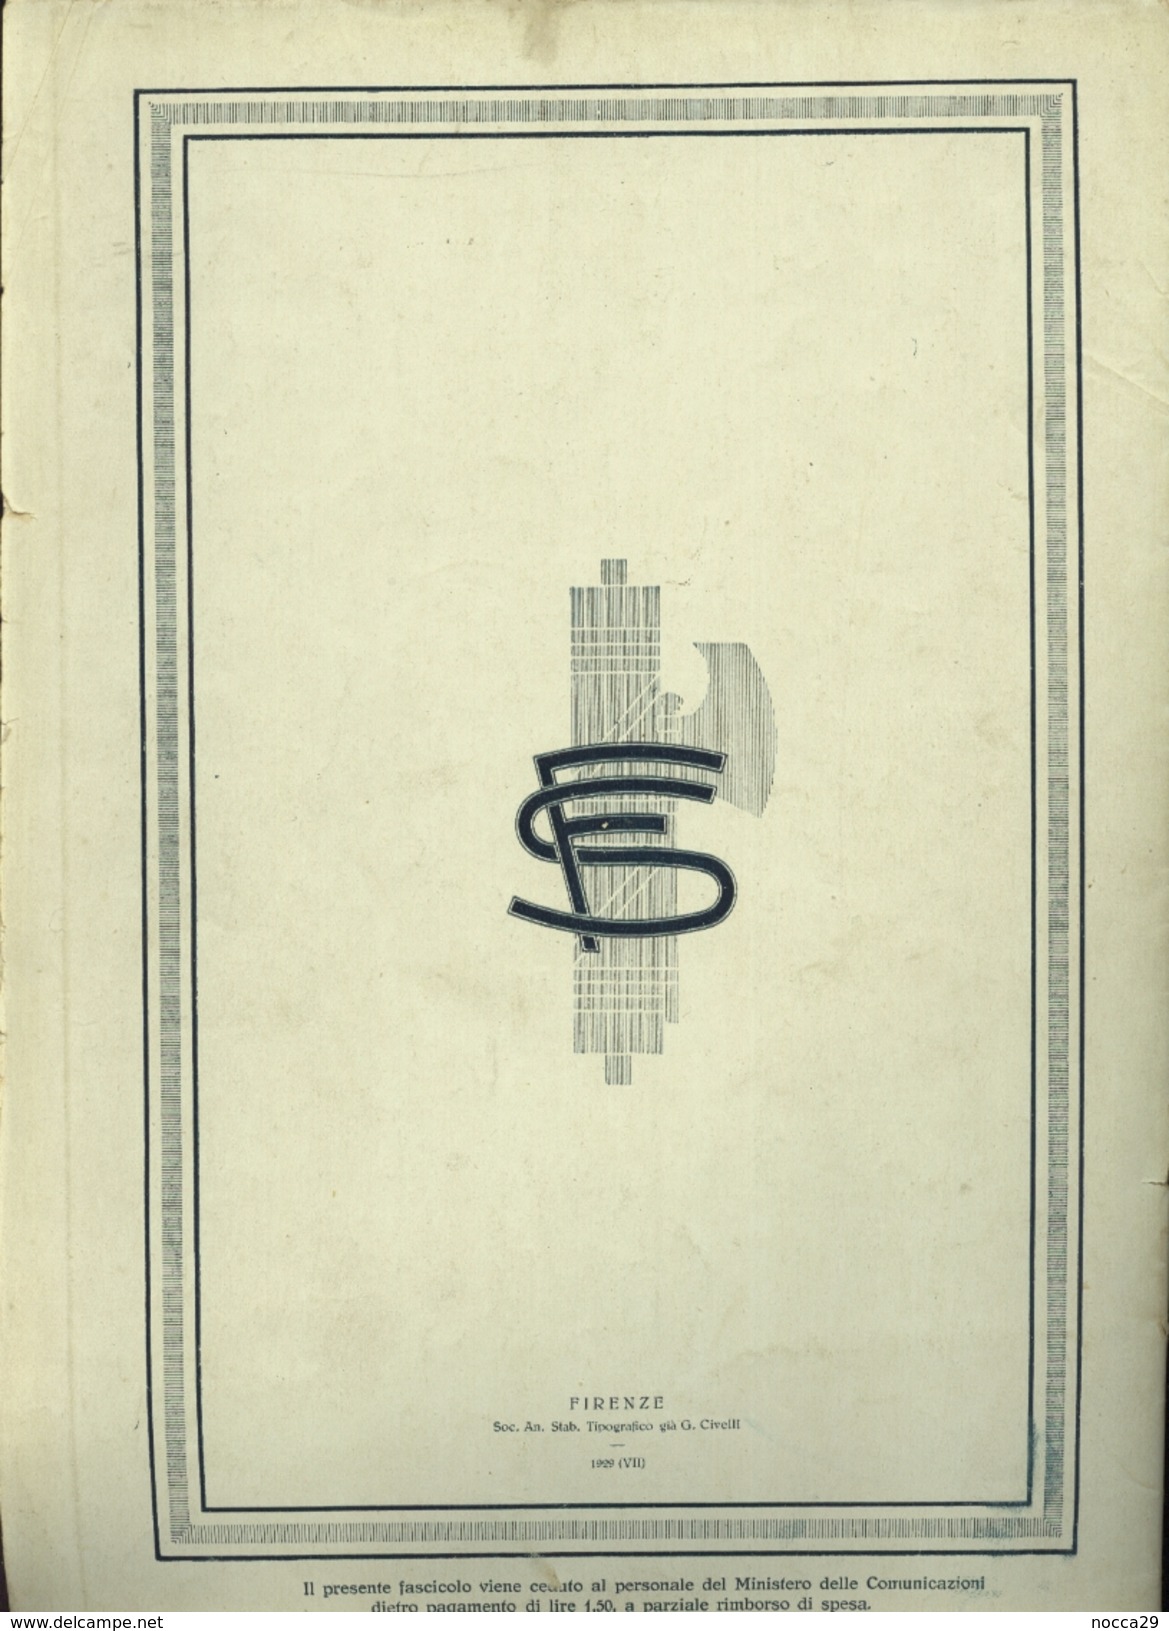 FERROVIE - NOTIZIARIO TECNICO DEL 1929 - ALL'INTERNO LUNGO ARTICOLO SULLA TRATTA ROMA AVEZZANO SULMONA - Scientific Texts